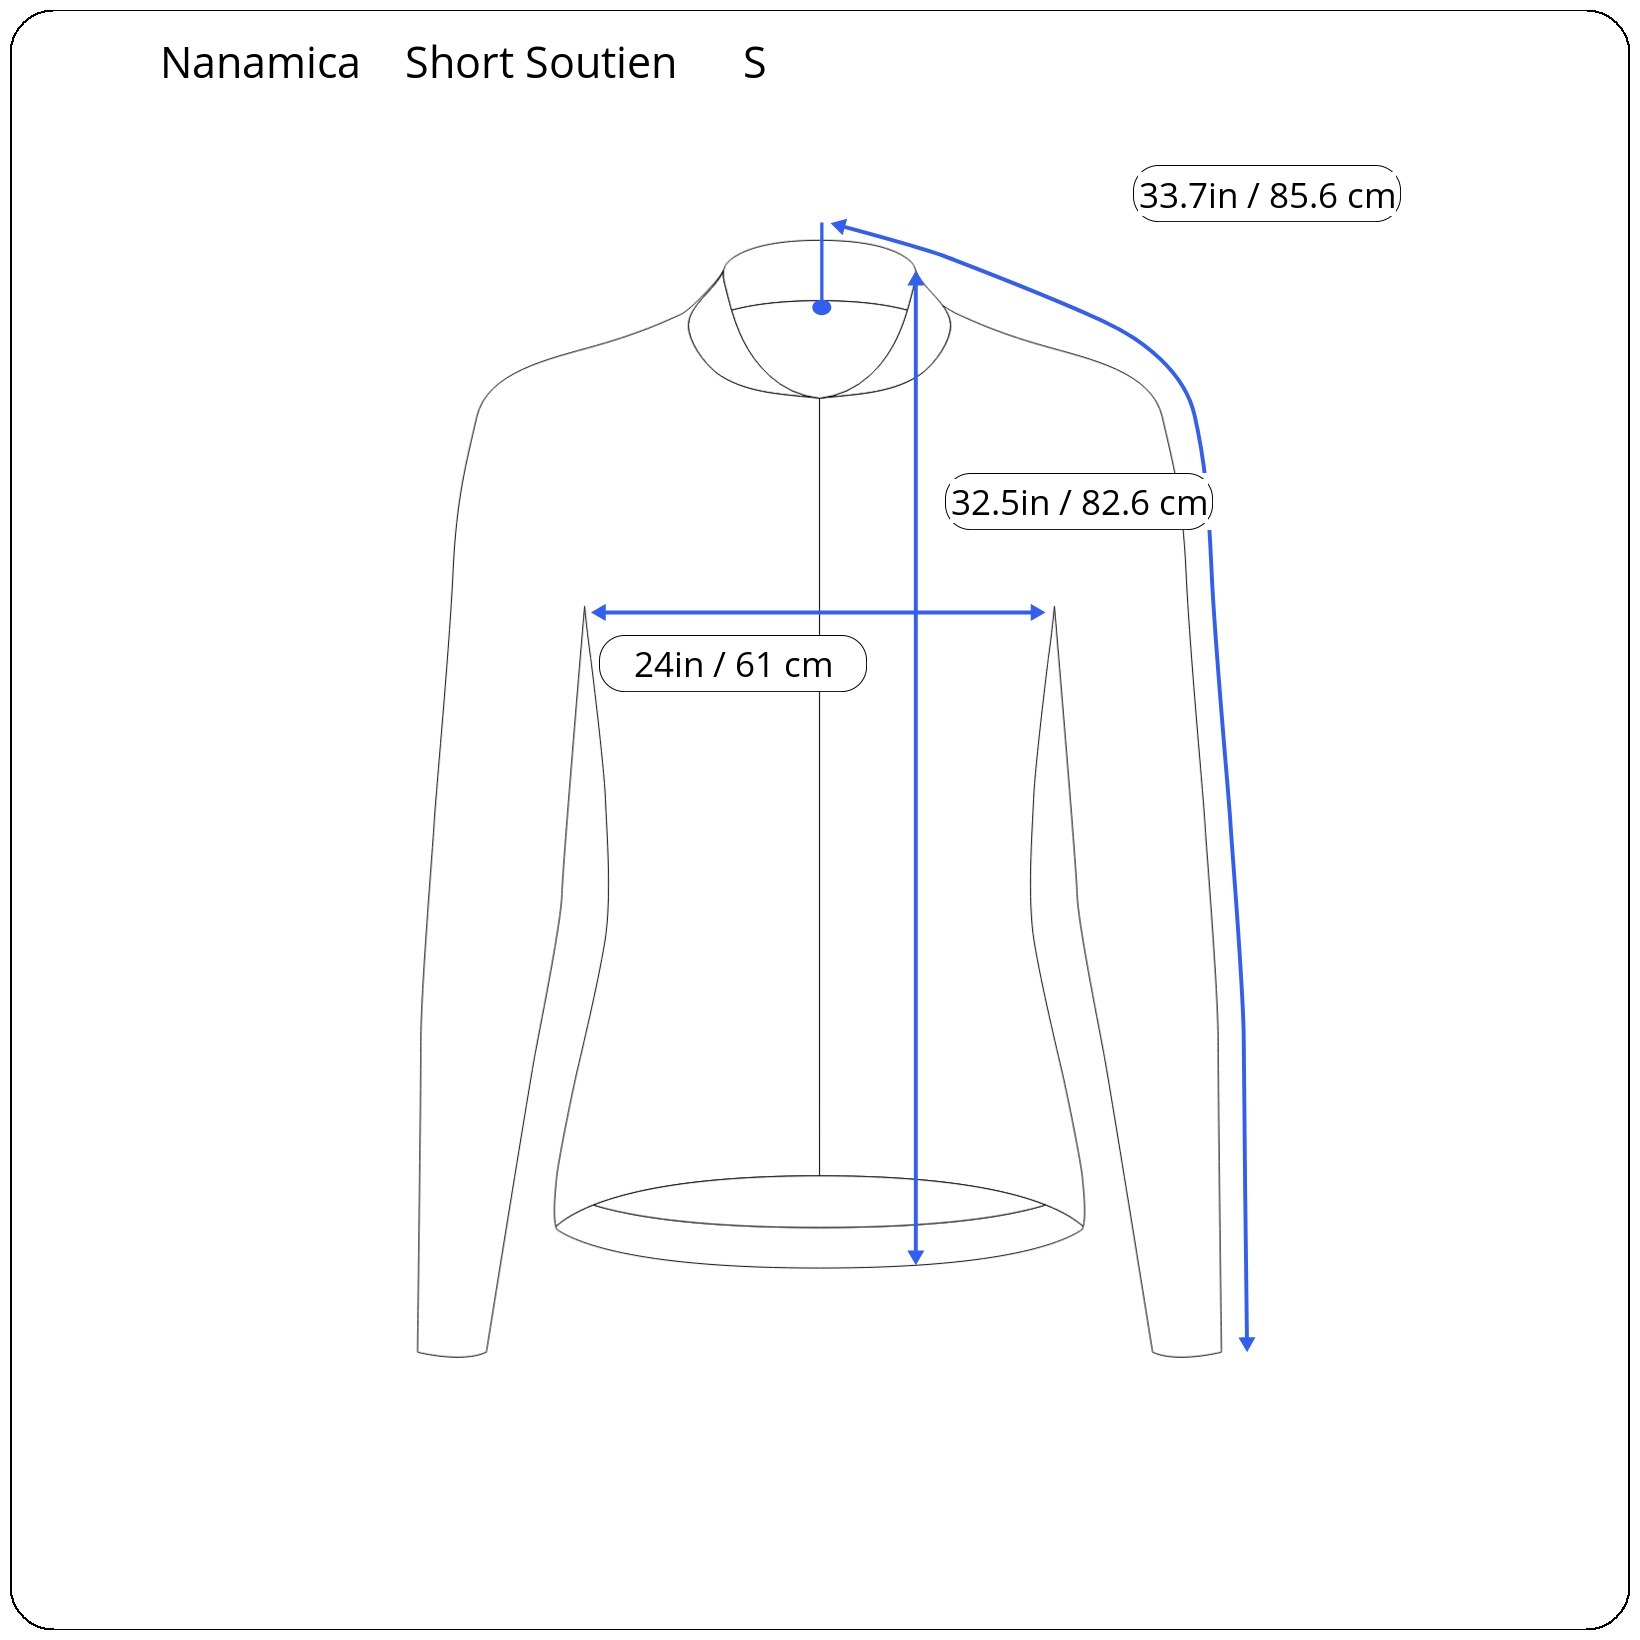 Nanamica 2L GORE-TEX Short Soutien Collar Coat in Beige | Wallace Merc